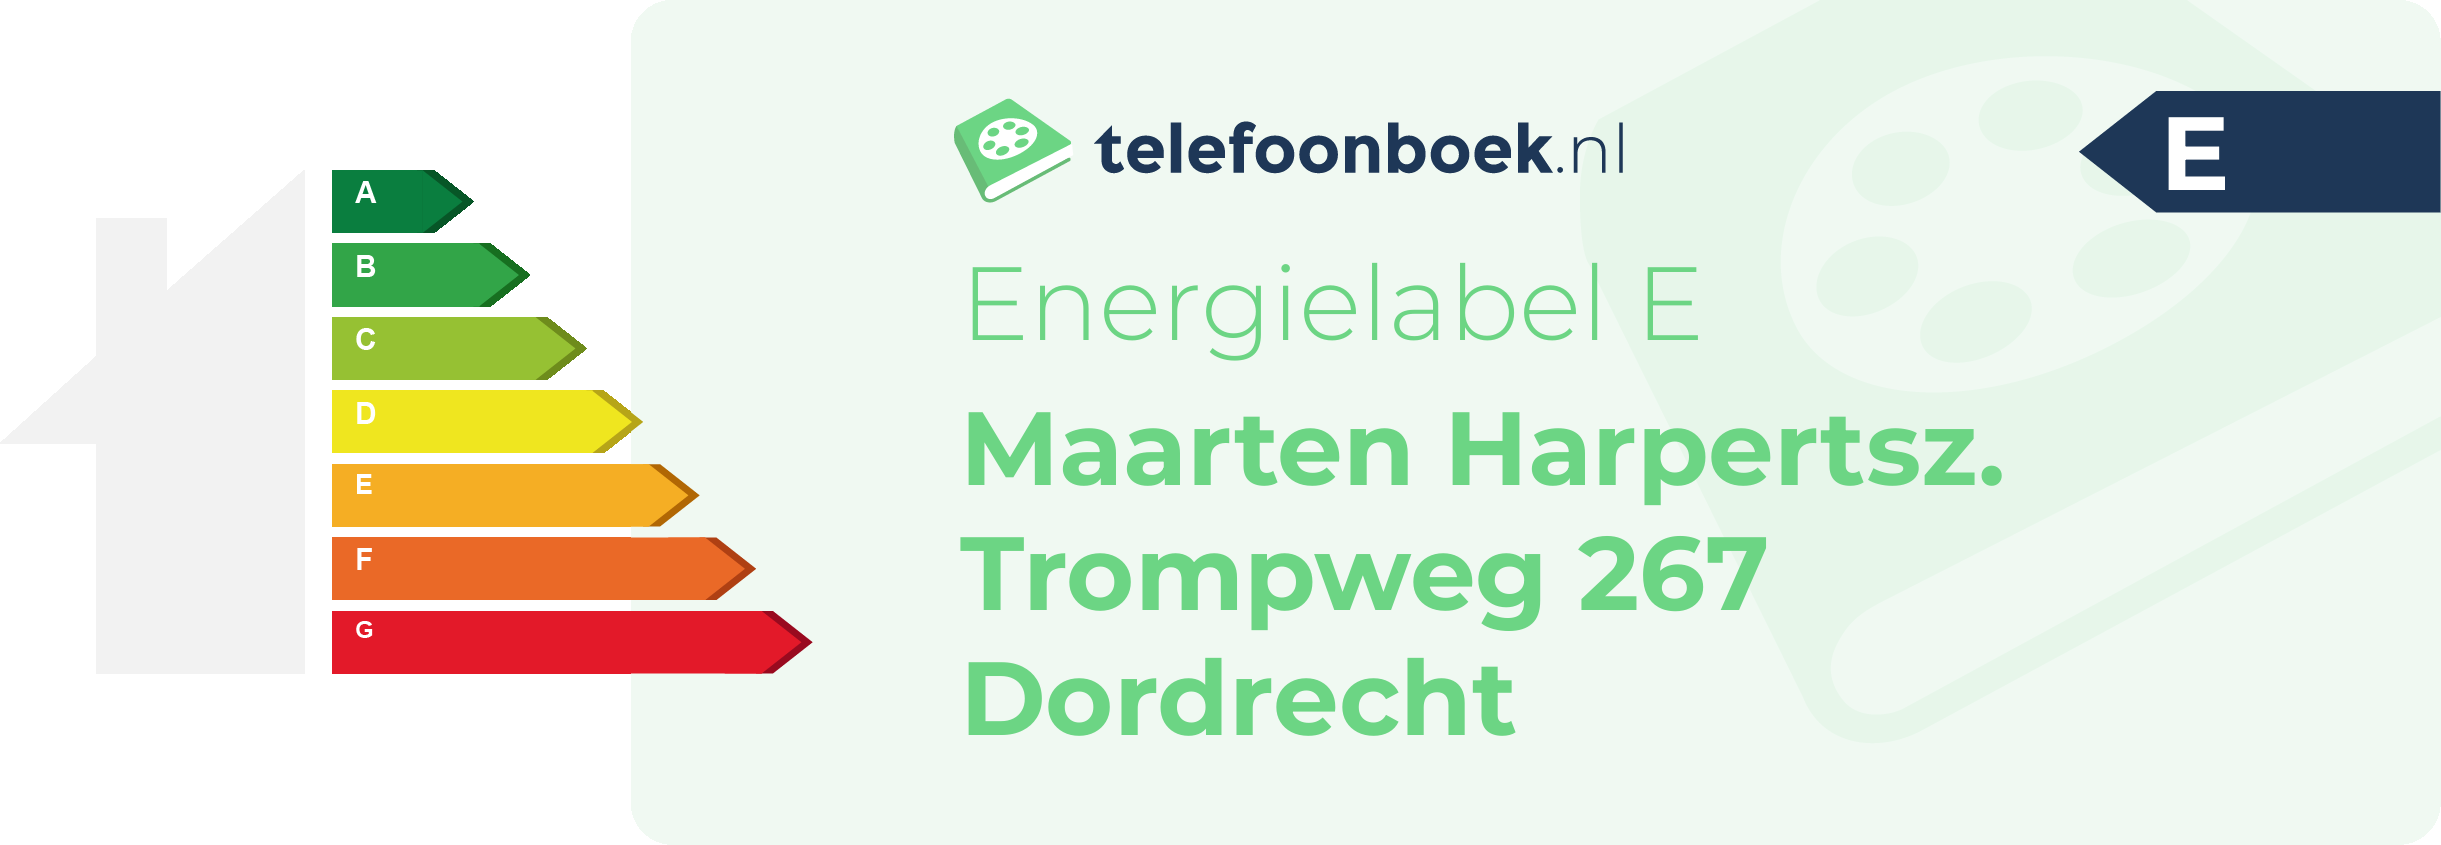 Energielabel Maarten Harpertsz. Trompweg 267 Dordrecht